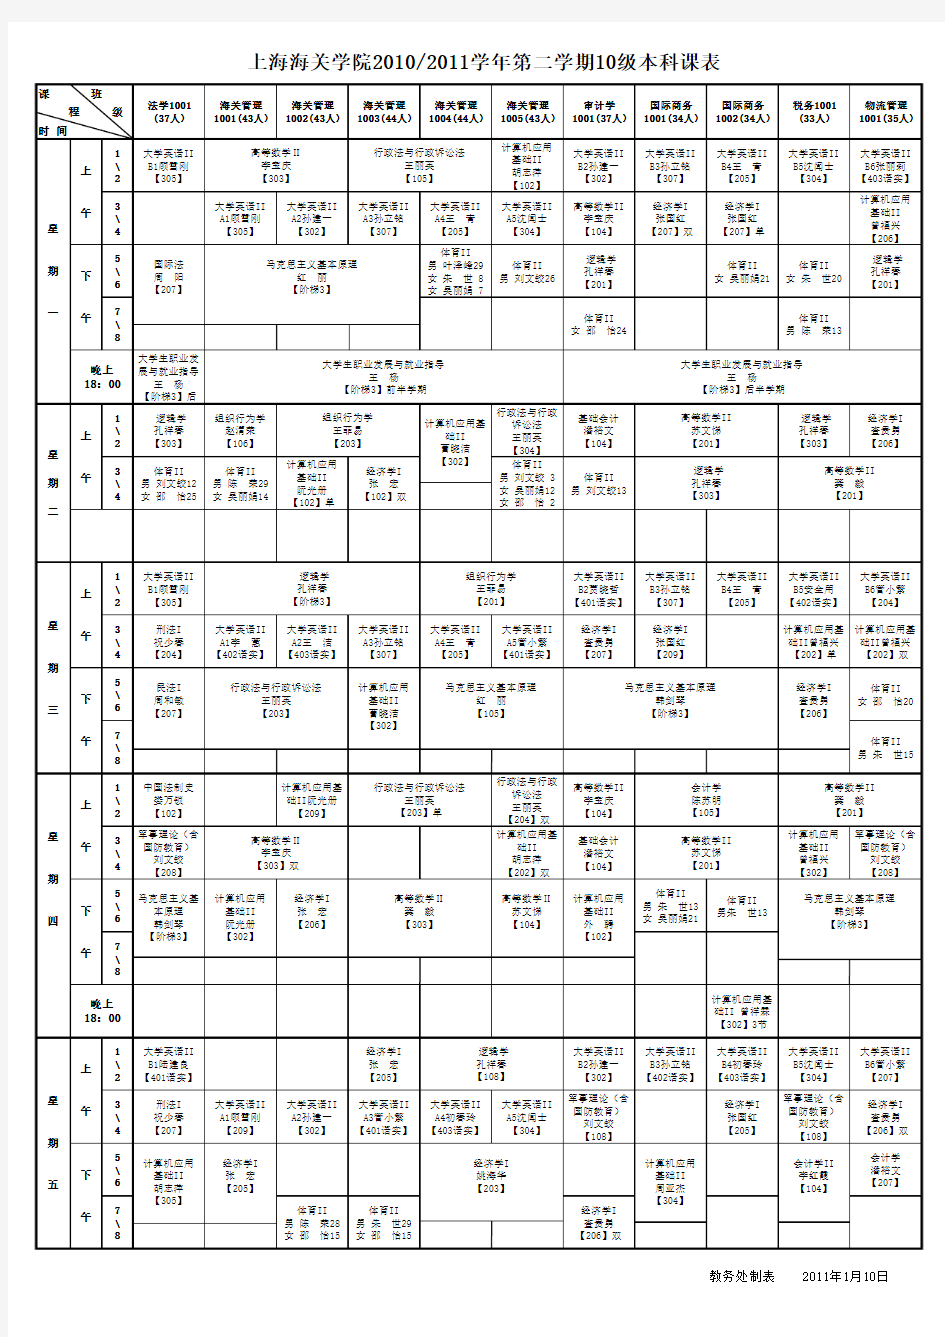 上海海关学院2010-2011学年第二学期课表